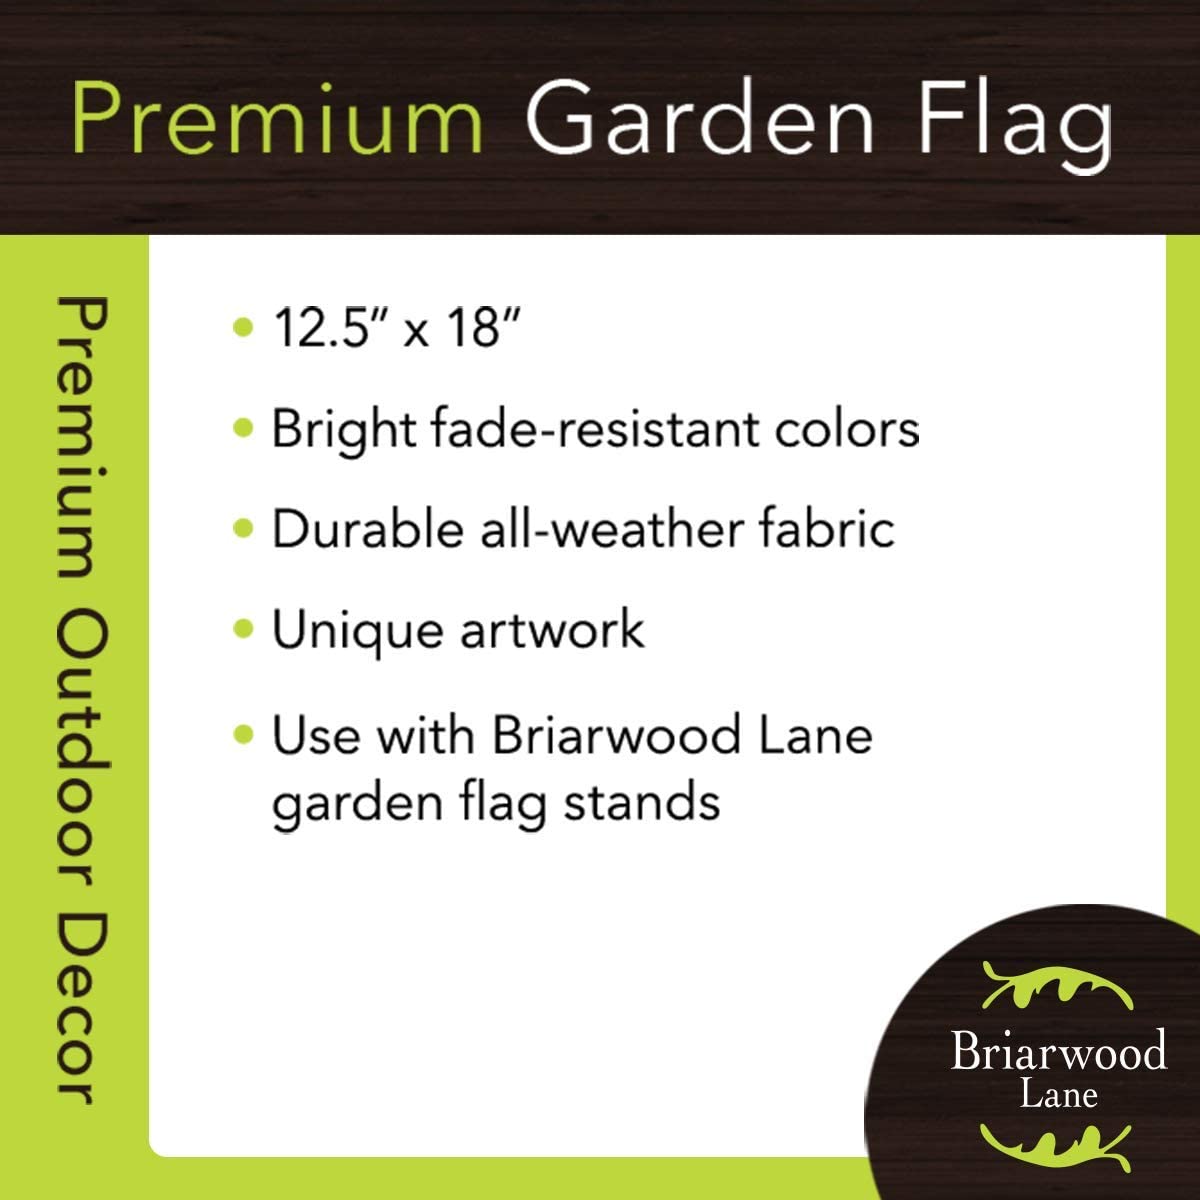 Spring Camper Burlap Garden Flag, G01174